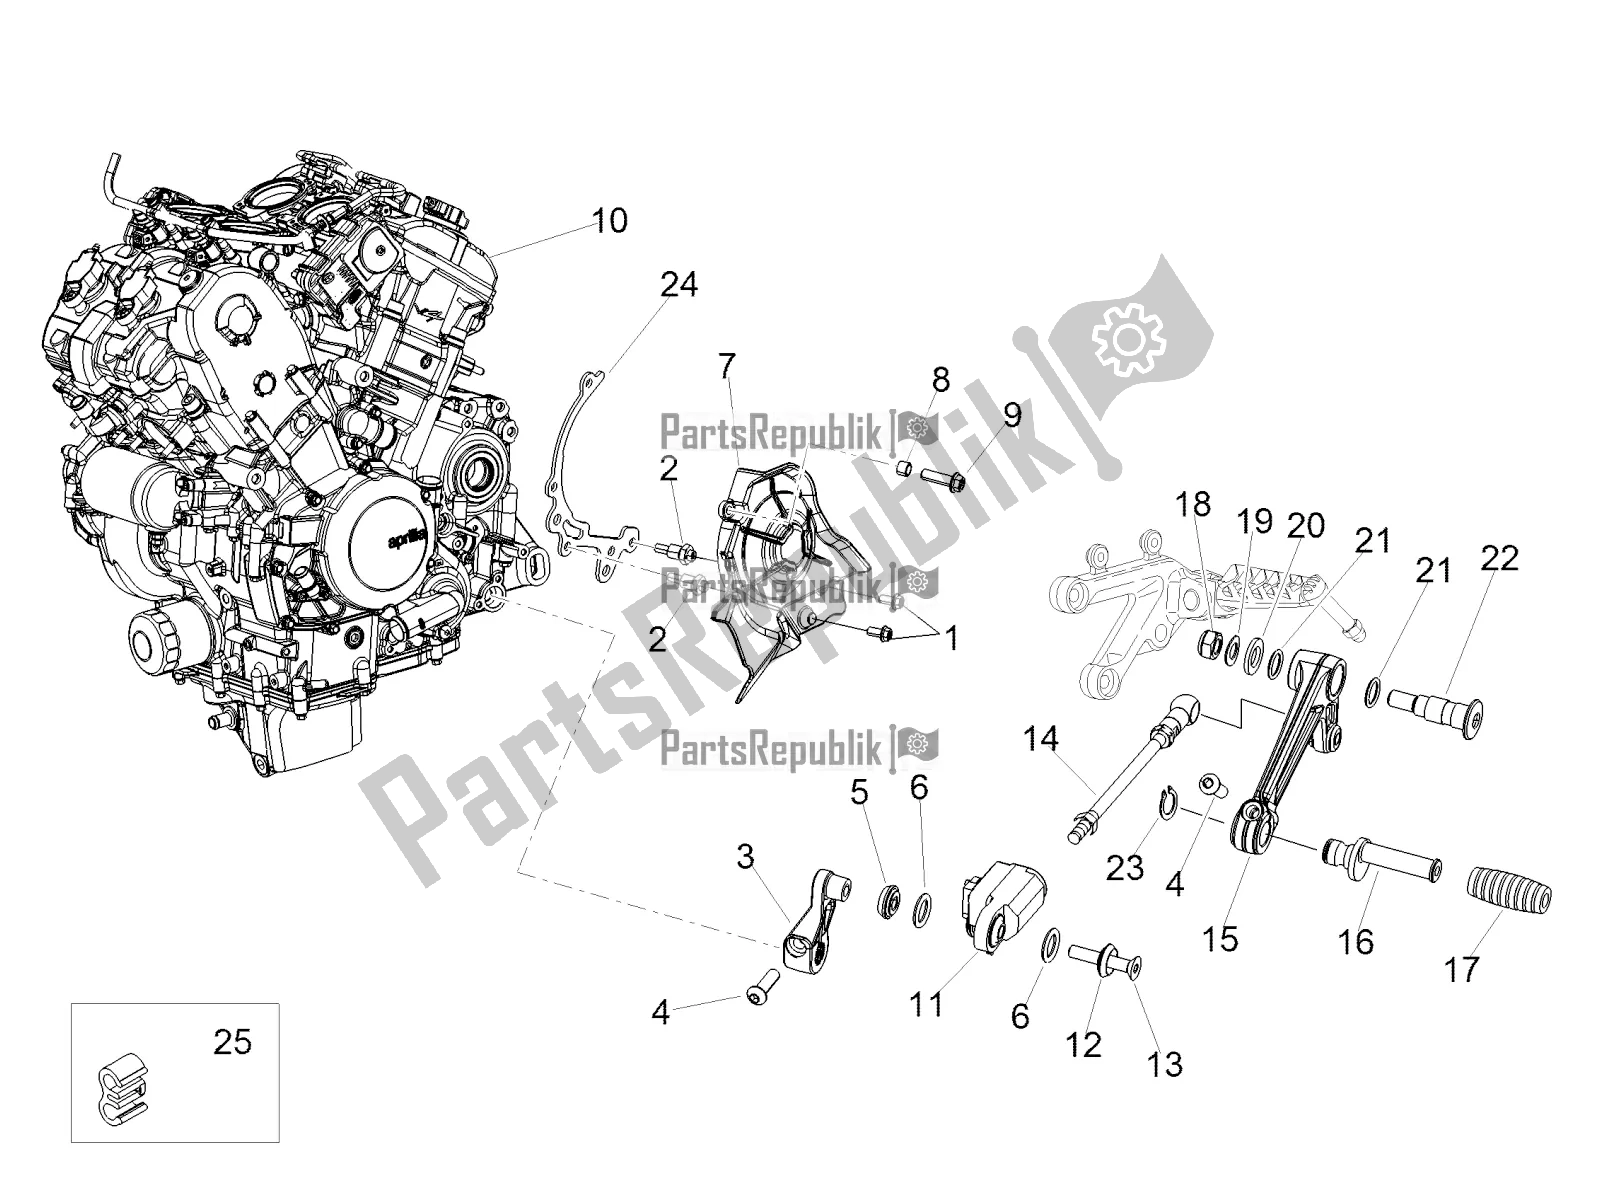 All parts for the Engine of the Aprilia Tuono V4 1100 RR 2020